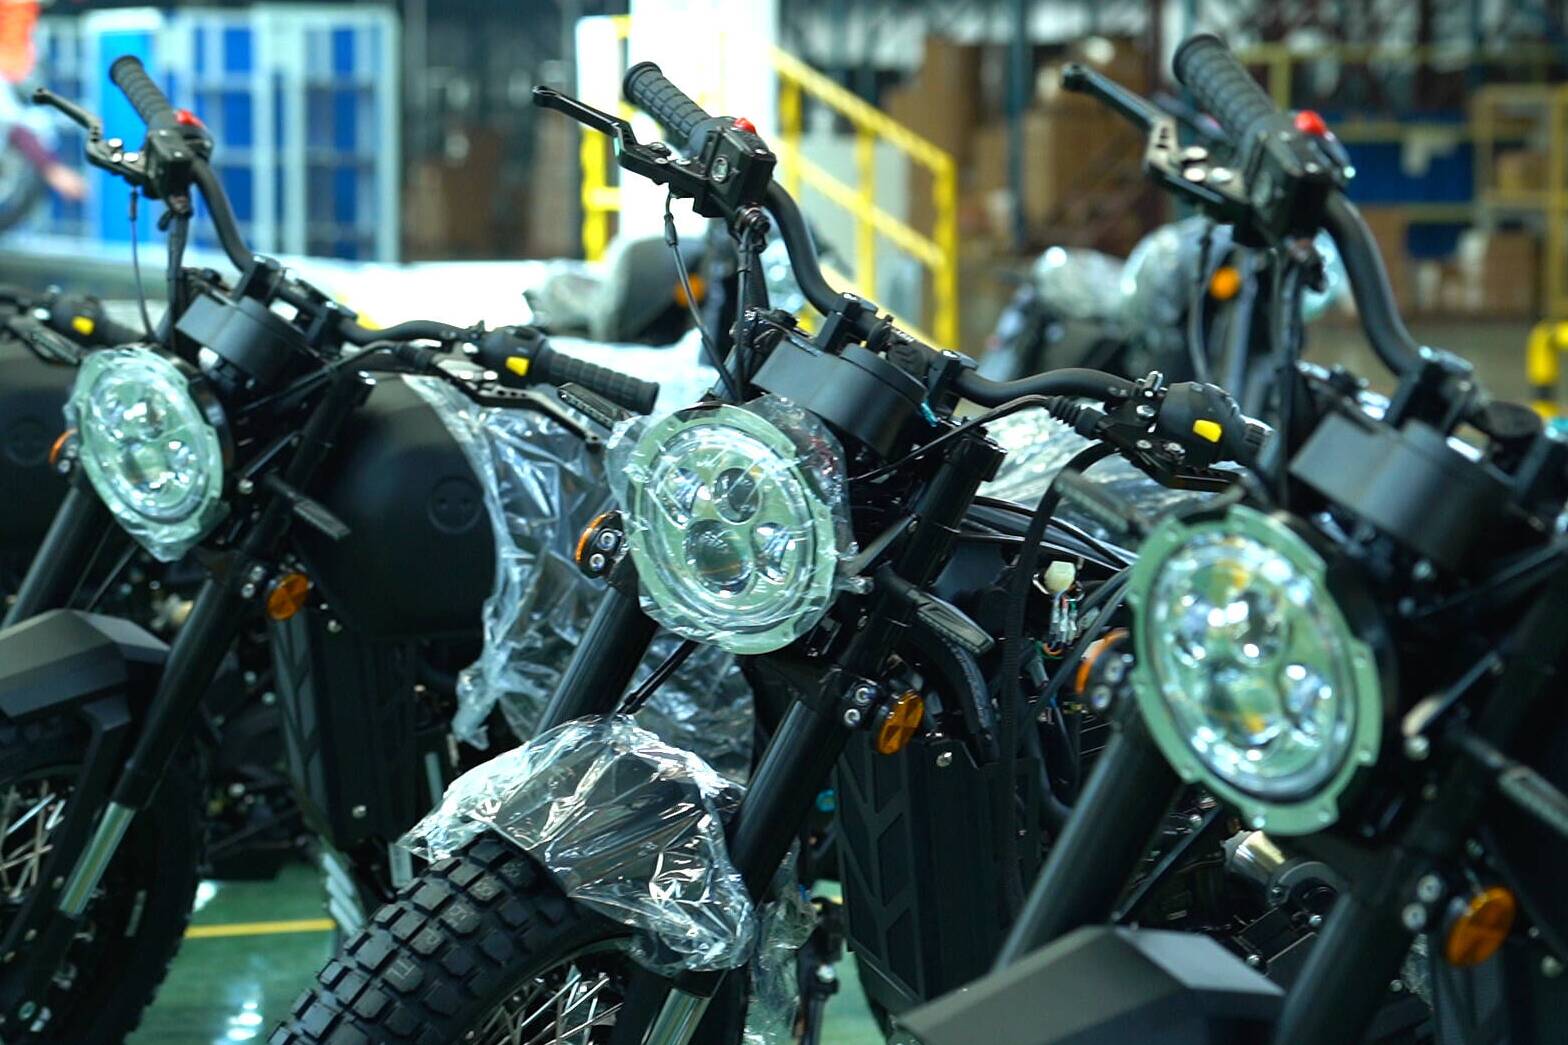 高端定制、畅销欧美等地……看德州这家摩托车生产企业有何魔力